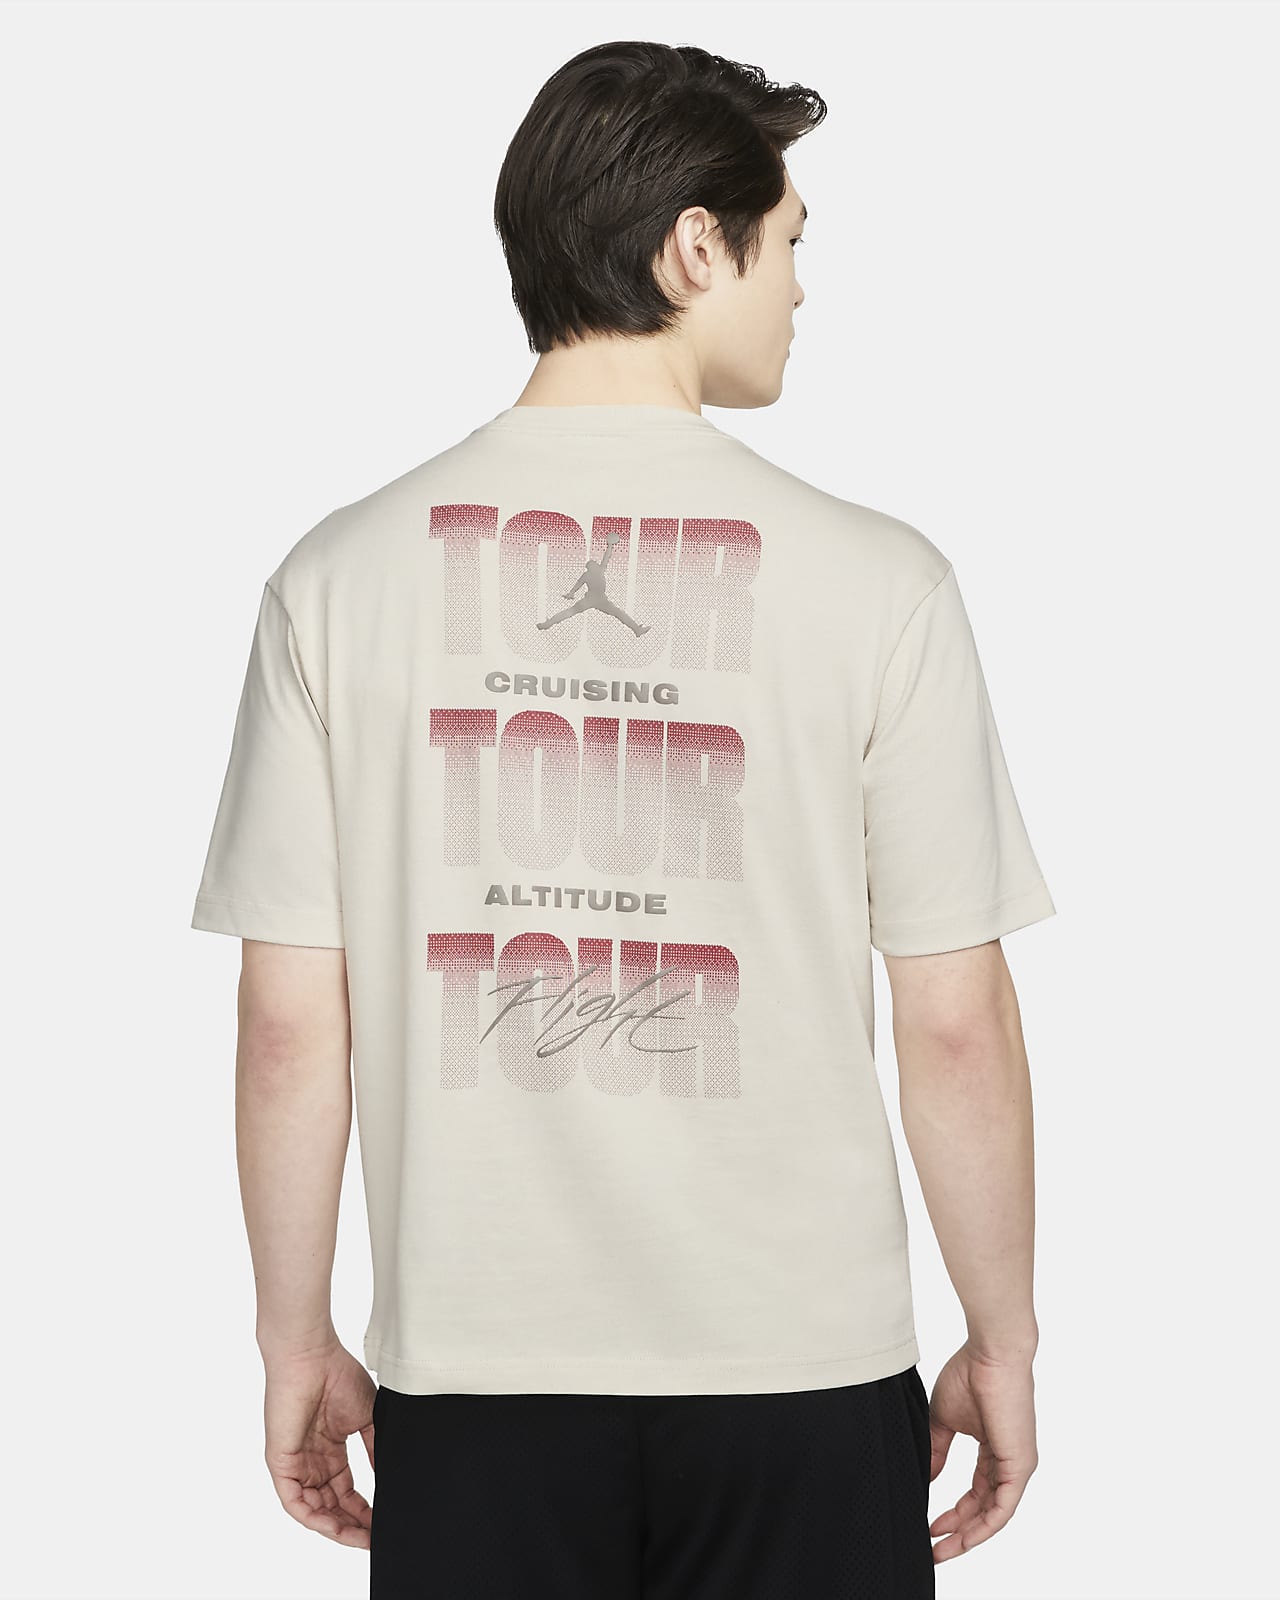 ジョーダン フライト ヘリテージ '85 メンズ Tシャツ